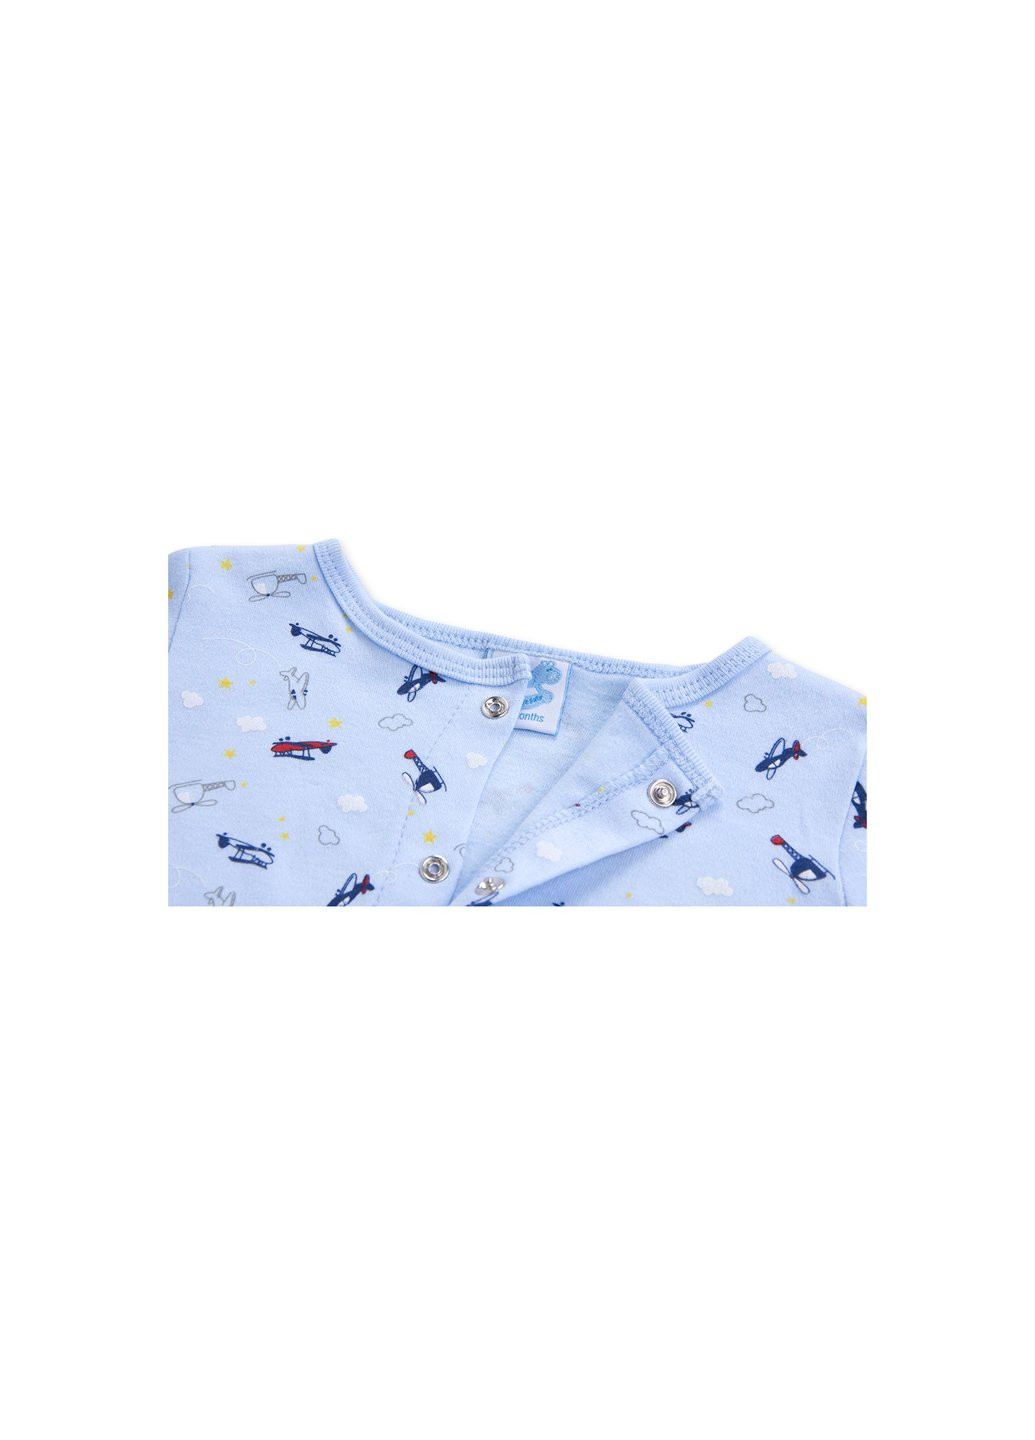 Комбинированный демисезонный набор детской одежды для мальчиков :человечек, штанишки, кофточка и шапочка (f7763.b.3-6) Luvena Fortuna